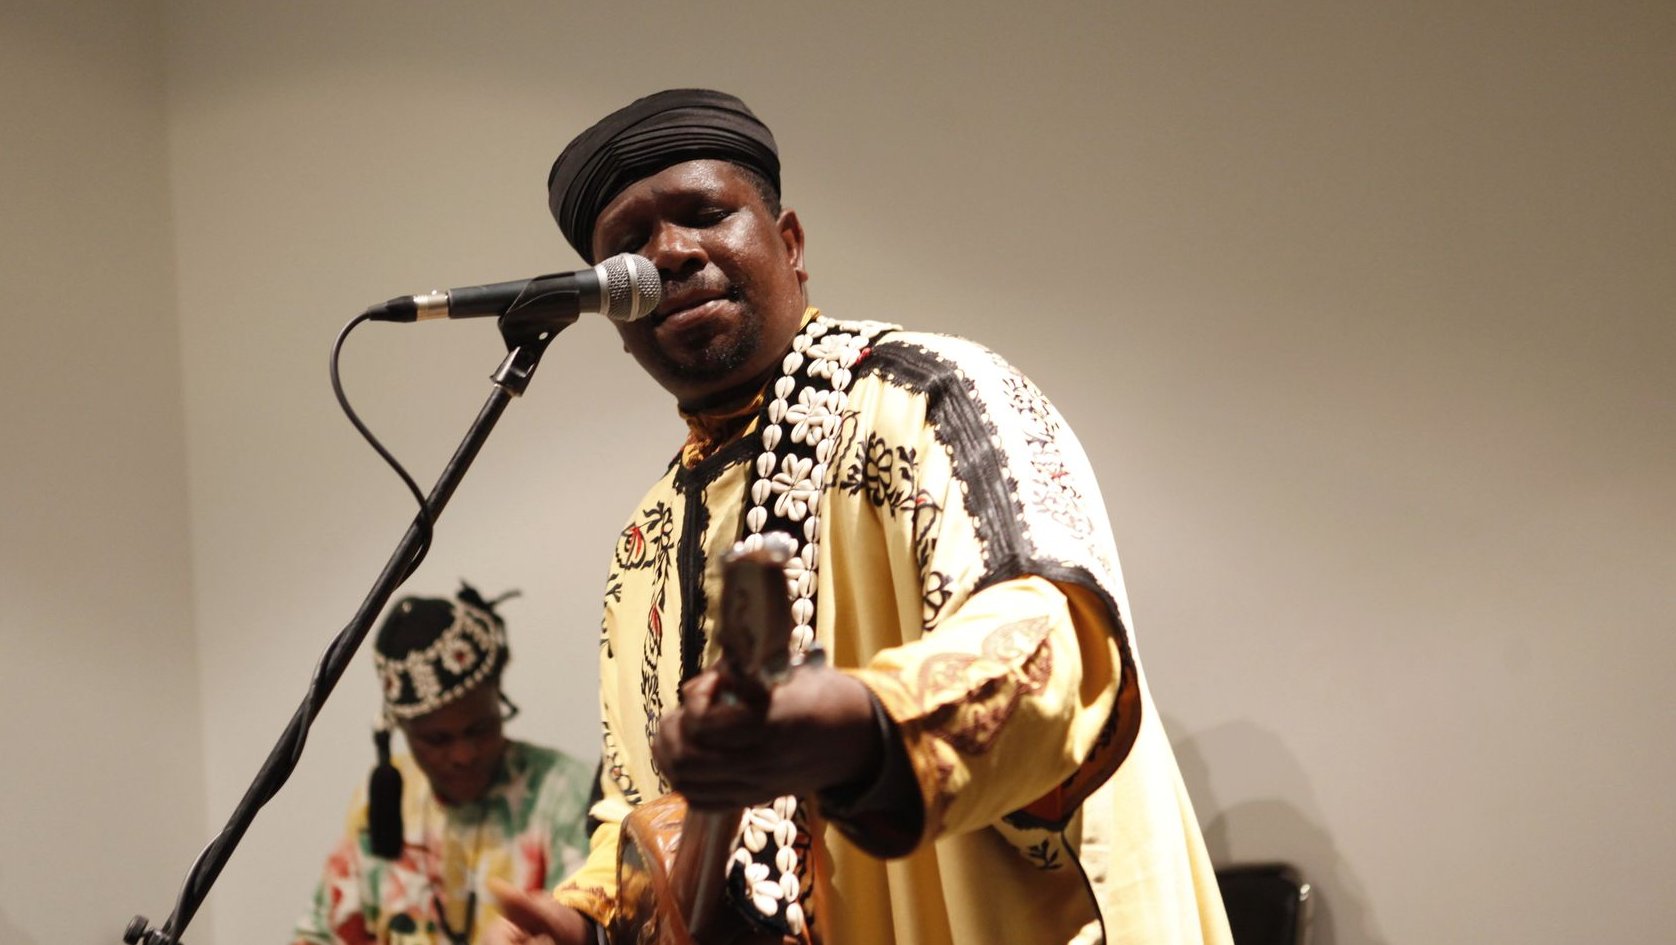 En digne héritier de son père, Boubker Guinea, le maalem Mahmoud Guinea transemet les traditions de sa musique aux origines maliennes dans lesquelles il a baigné depuis sa plus tendre enfance.
